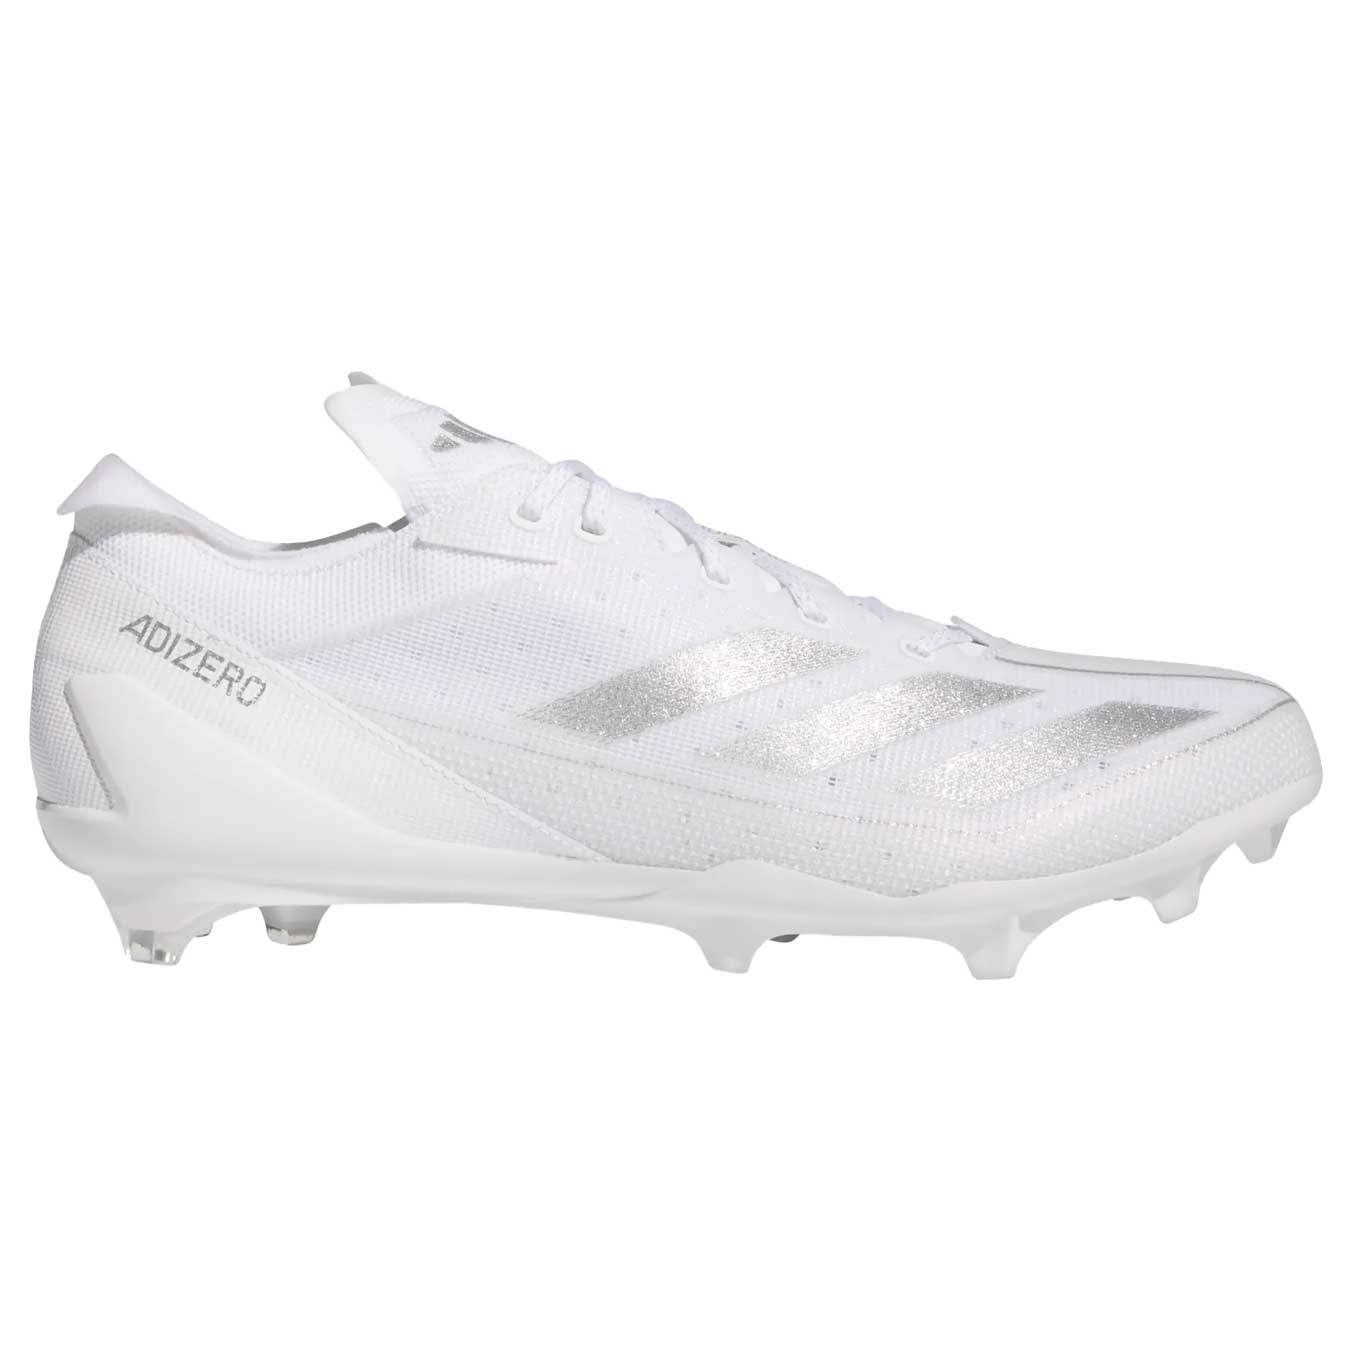 Adidas adizero Electric White/Silver Cleats